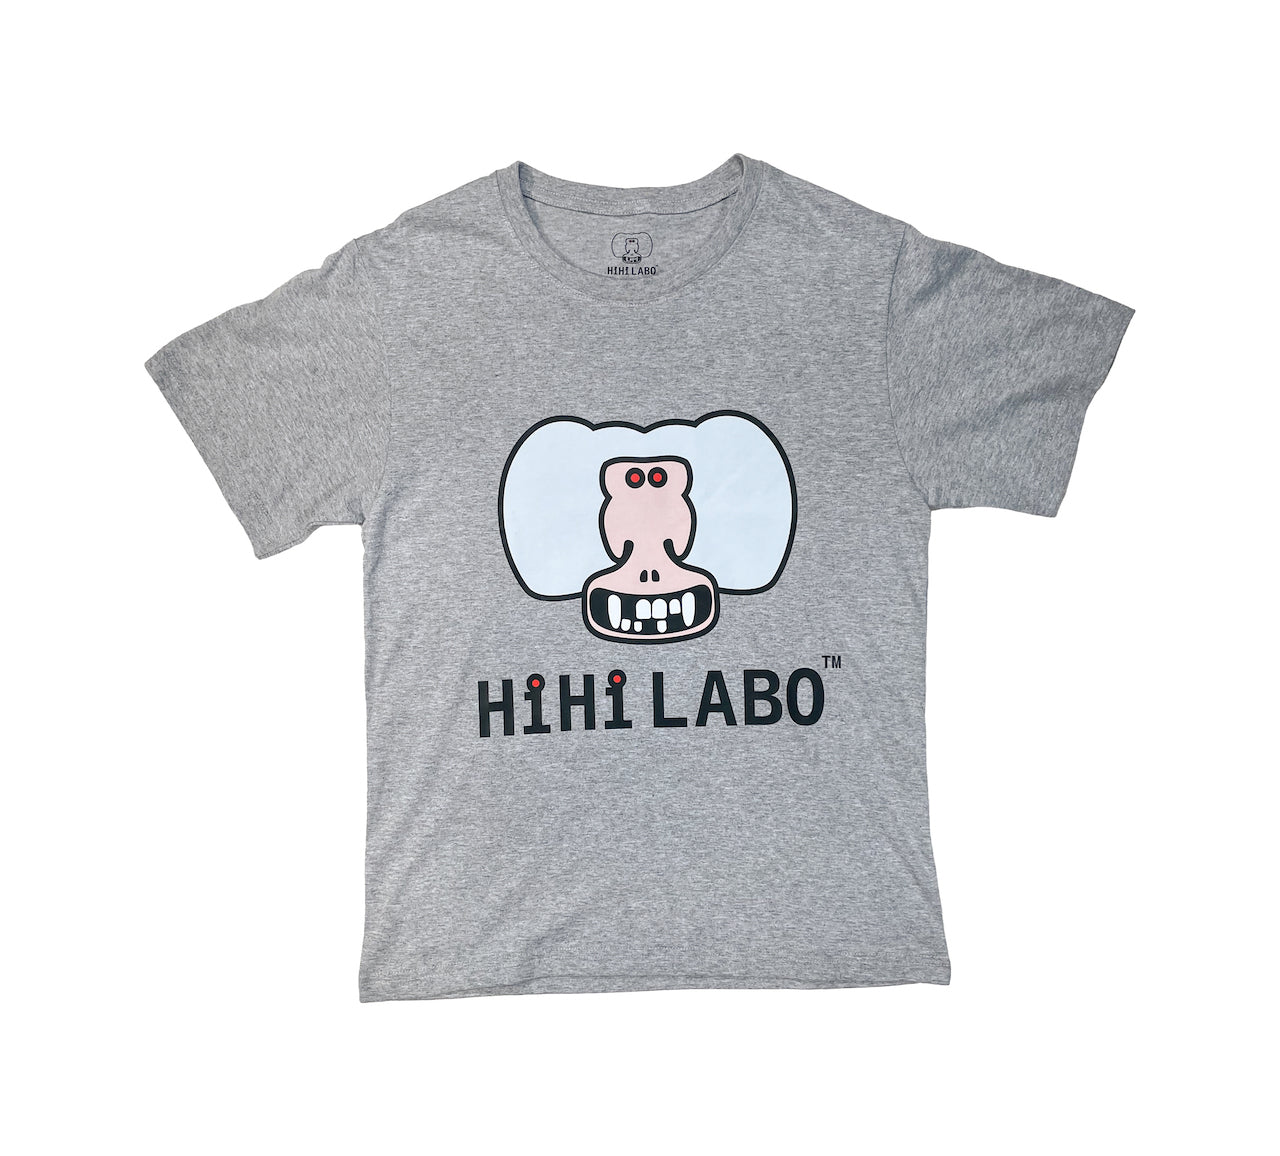 HiHi LABOアイコン&ロゴプリント 半袖Tシャツ